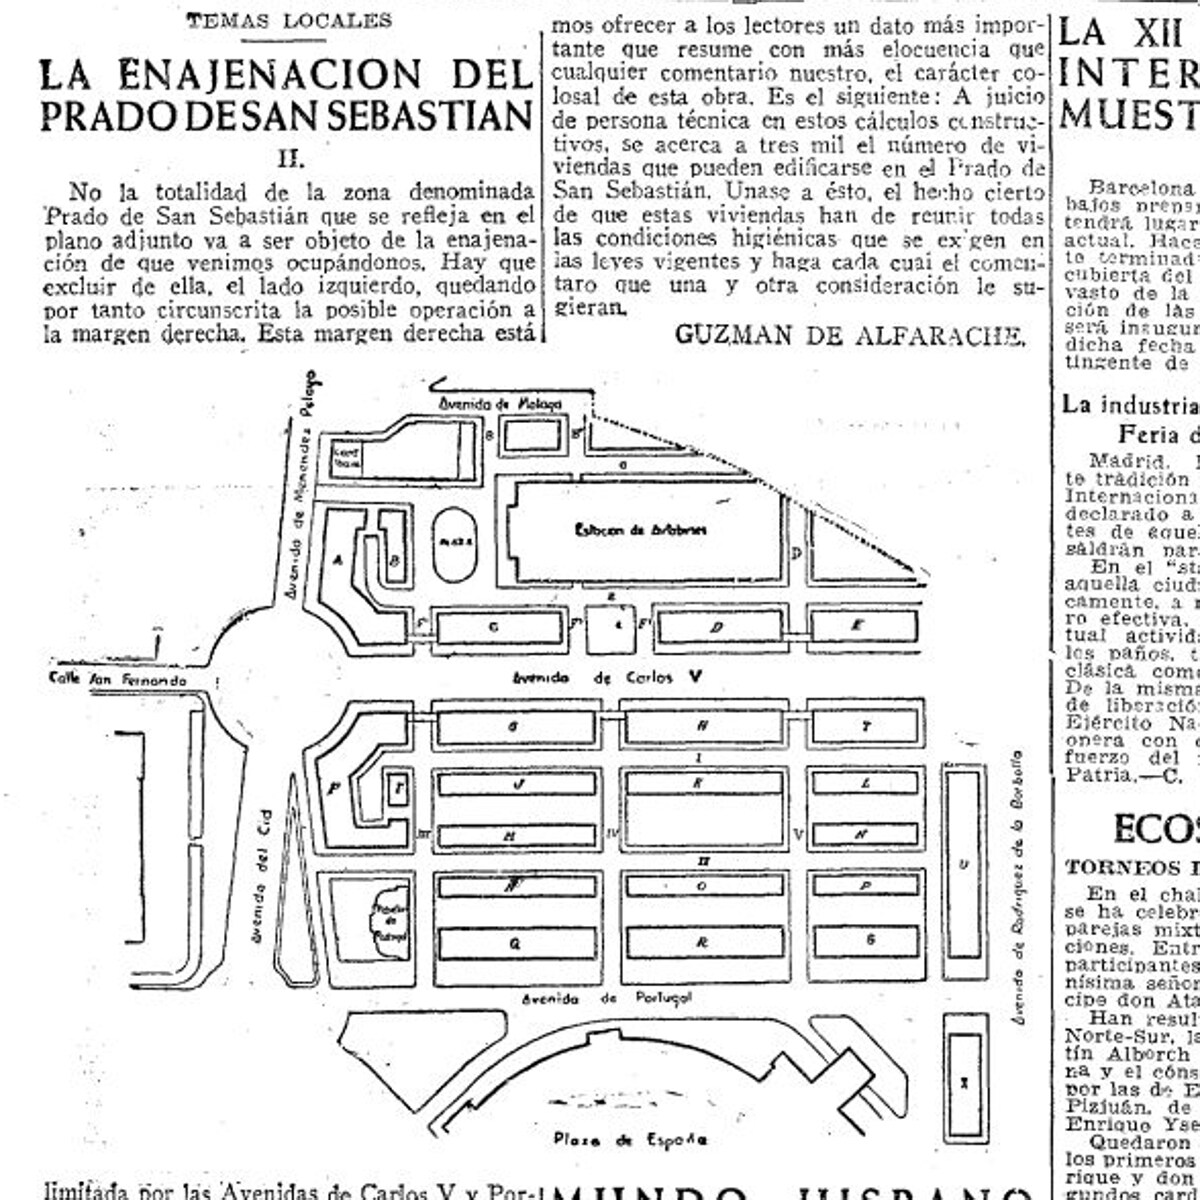 El plano con los lotes en que se había dividido el Prado para el concurso de enajenación de 1945